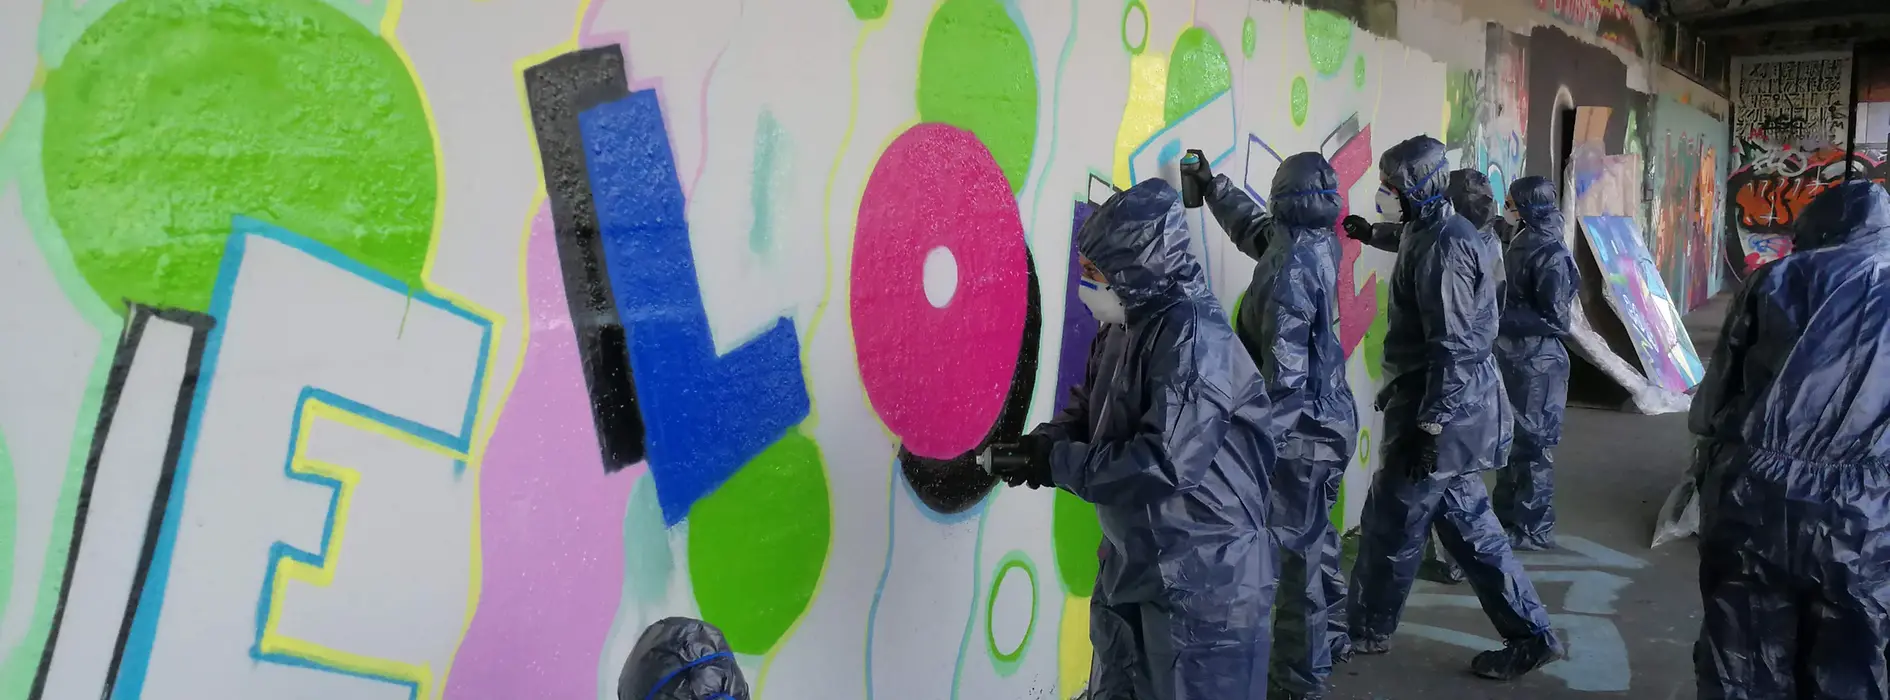 Gruppe besprühen Wand mit Graffiti